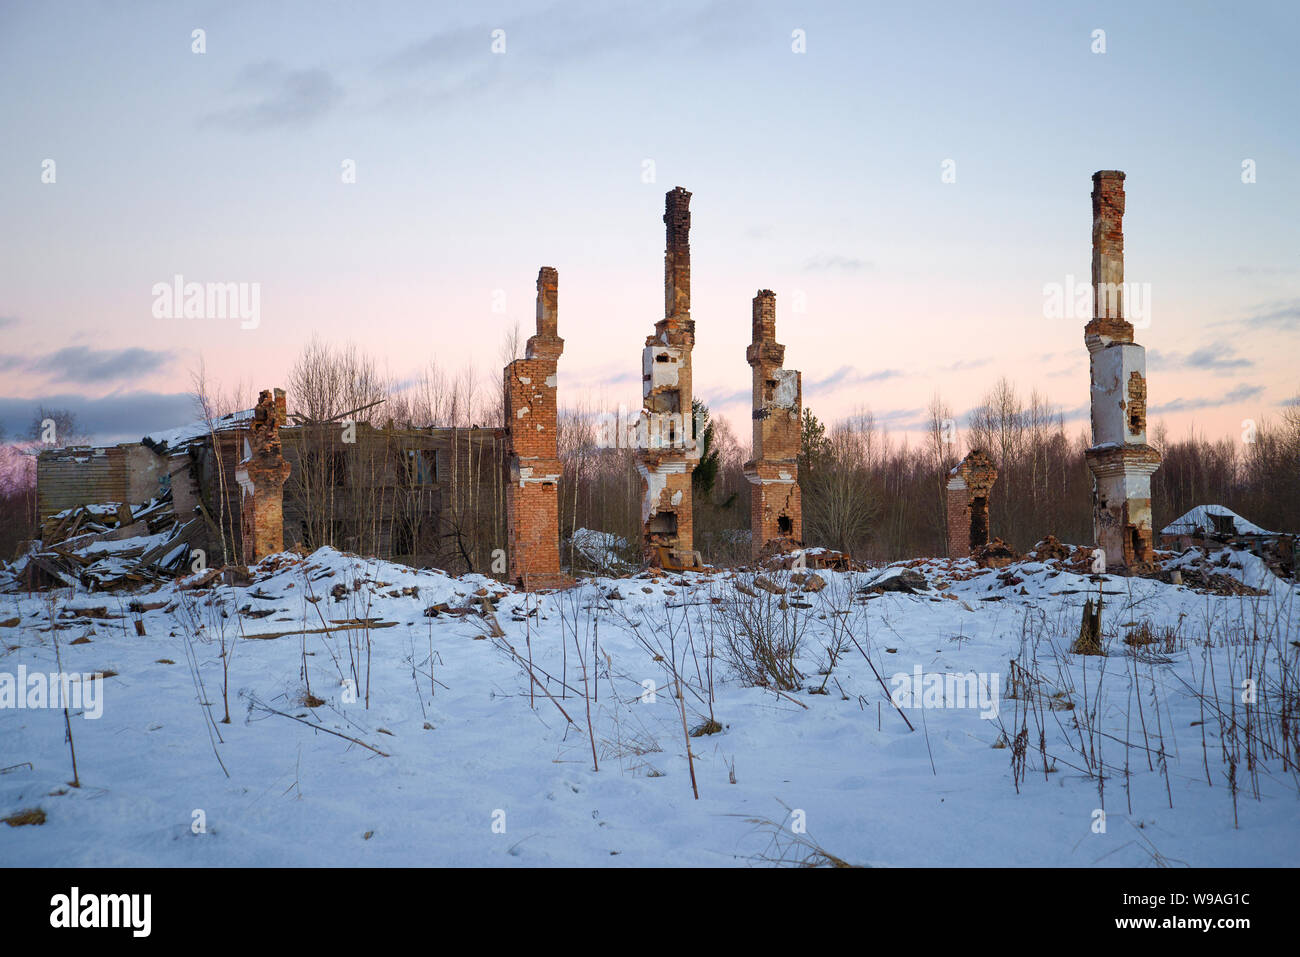 Ruinen von einem verbrannten Holz- zwei-stöckige Haus auf einem Januar  Abend. Ein verlassenes Dorf arbeiten in der Region Leningrad (Russisch  Amerika). Russland Stockfotografie - Alamy